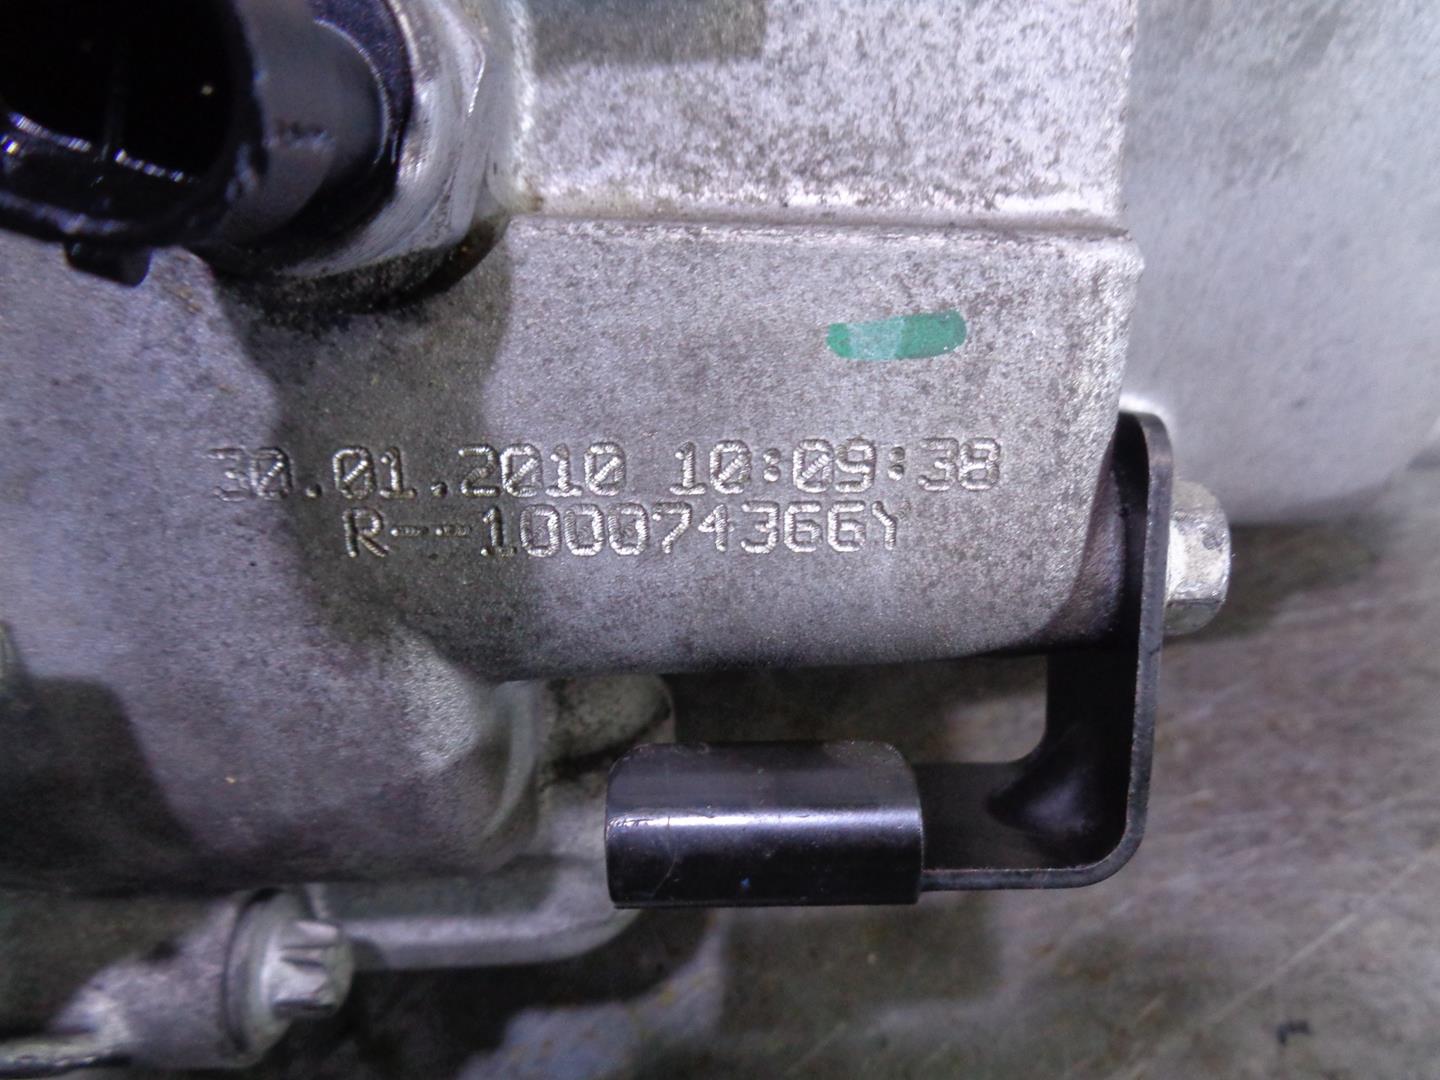 OPEL Insignia A (2008-2016) Gearbox F40, R100074366Y, 5700358 19914884